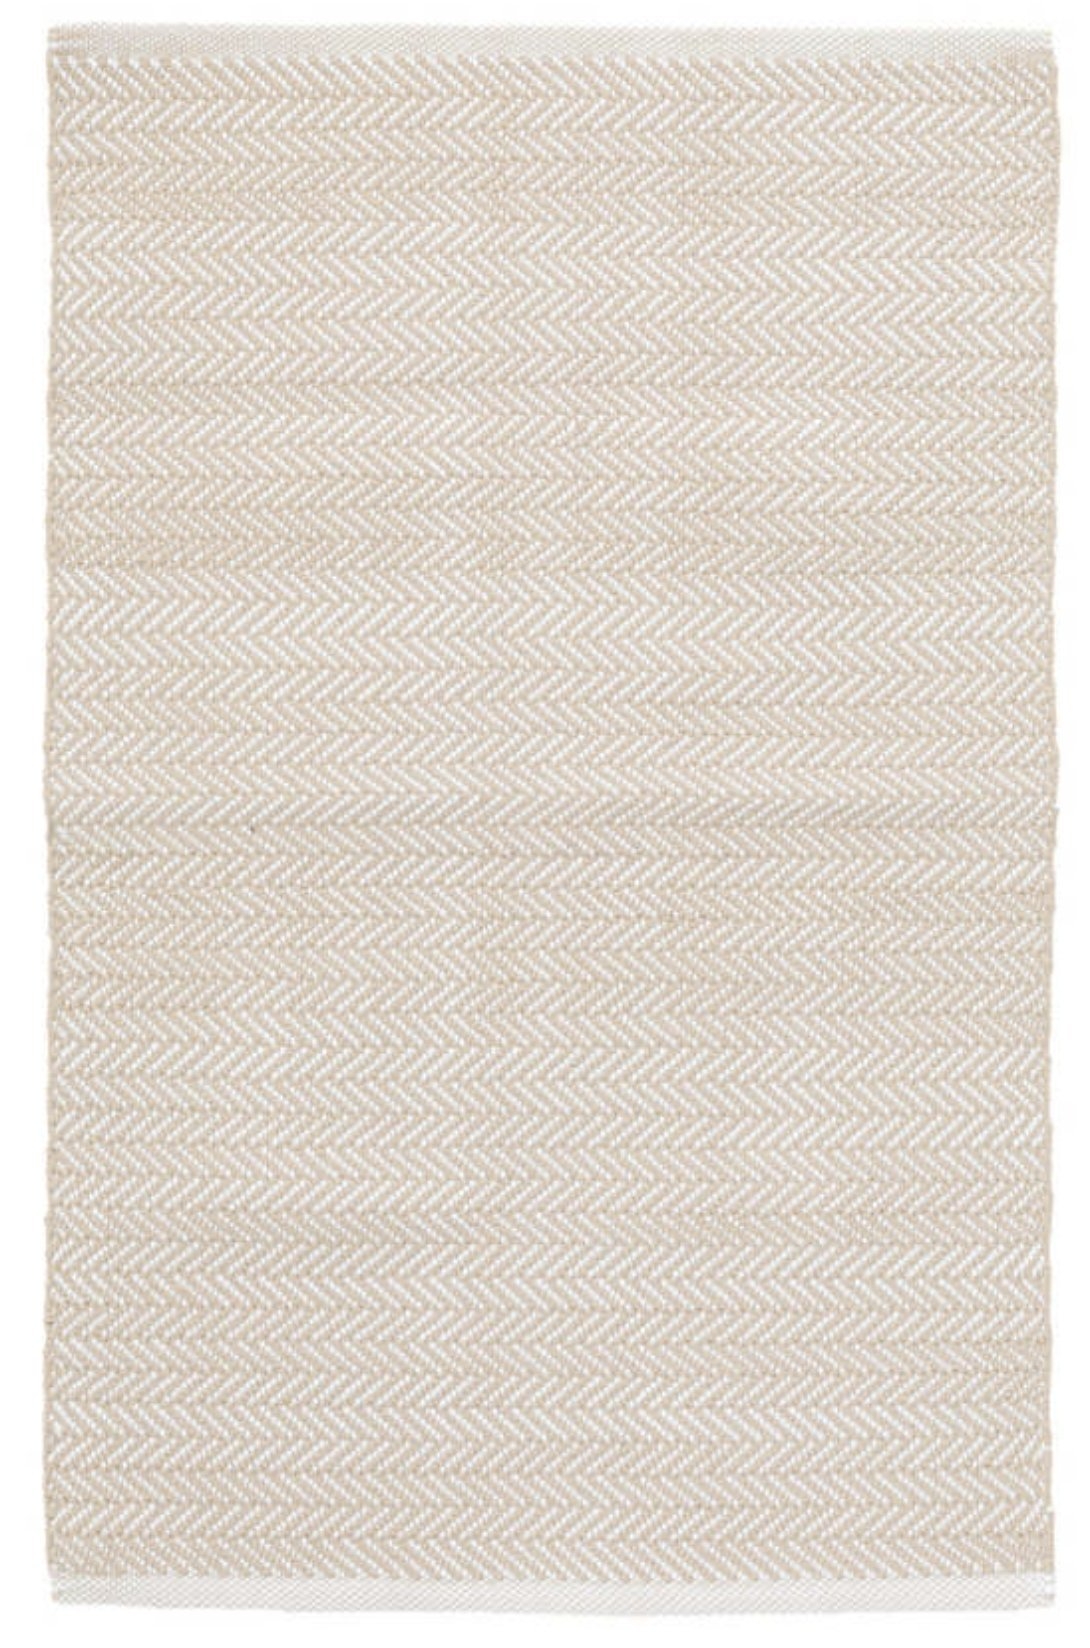 HERRINGBONE LINEN/WHITE INDOOR/OUTDOOR RUG / 8'x10' - Image 0